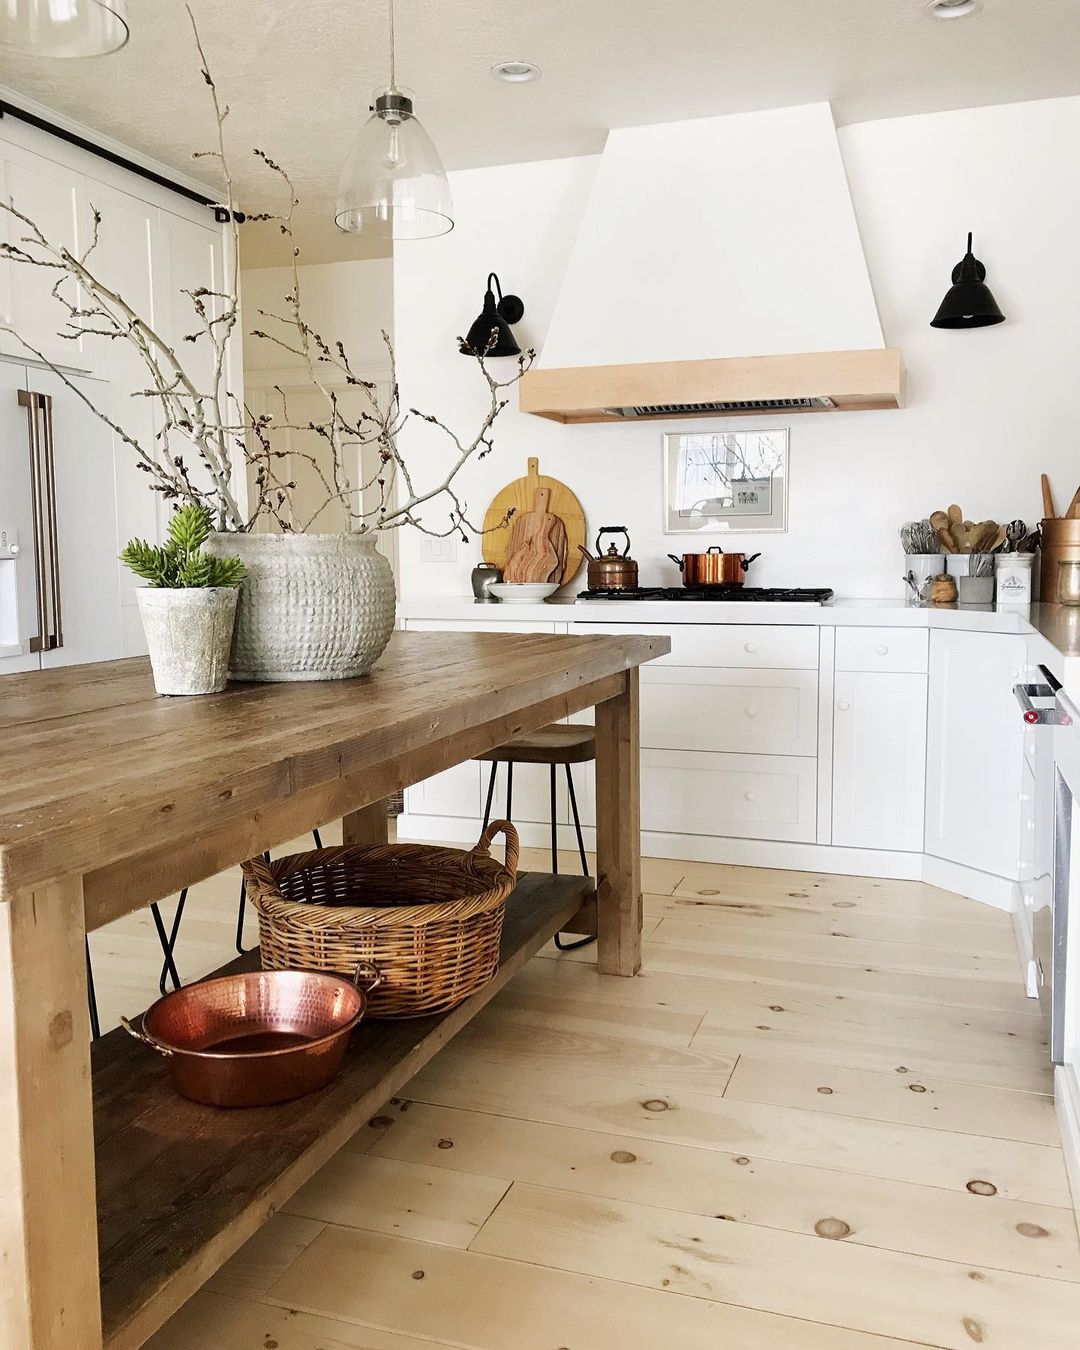 Modern Farmhouse Kitchen with Wood Kitchen Island. Photo by Instagram user @lauren_elizabeth_l